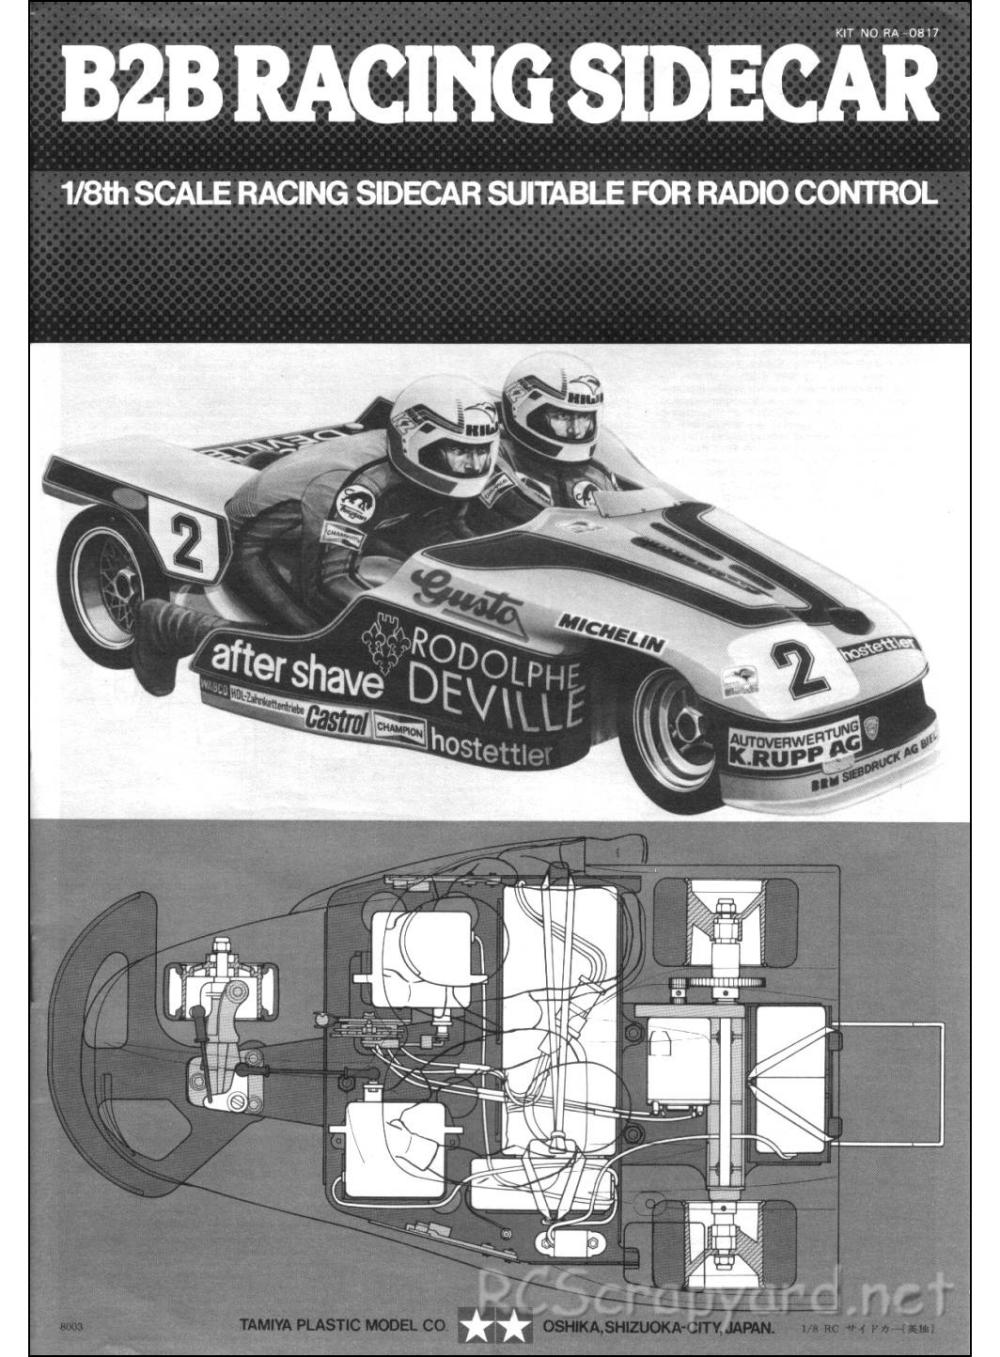 Tamiya - B2B Racing Sidecar - 58017 - Manual